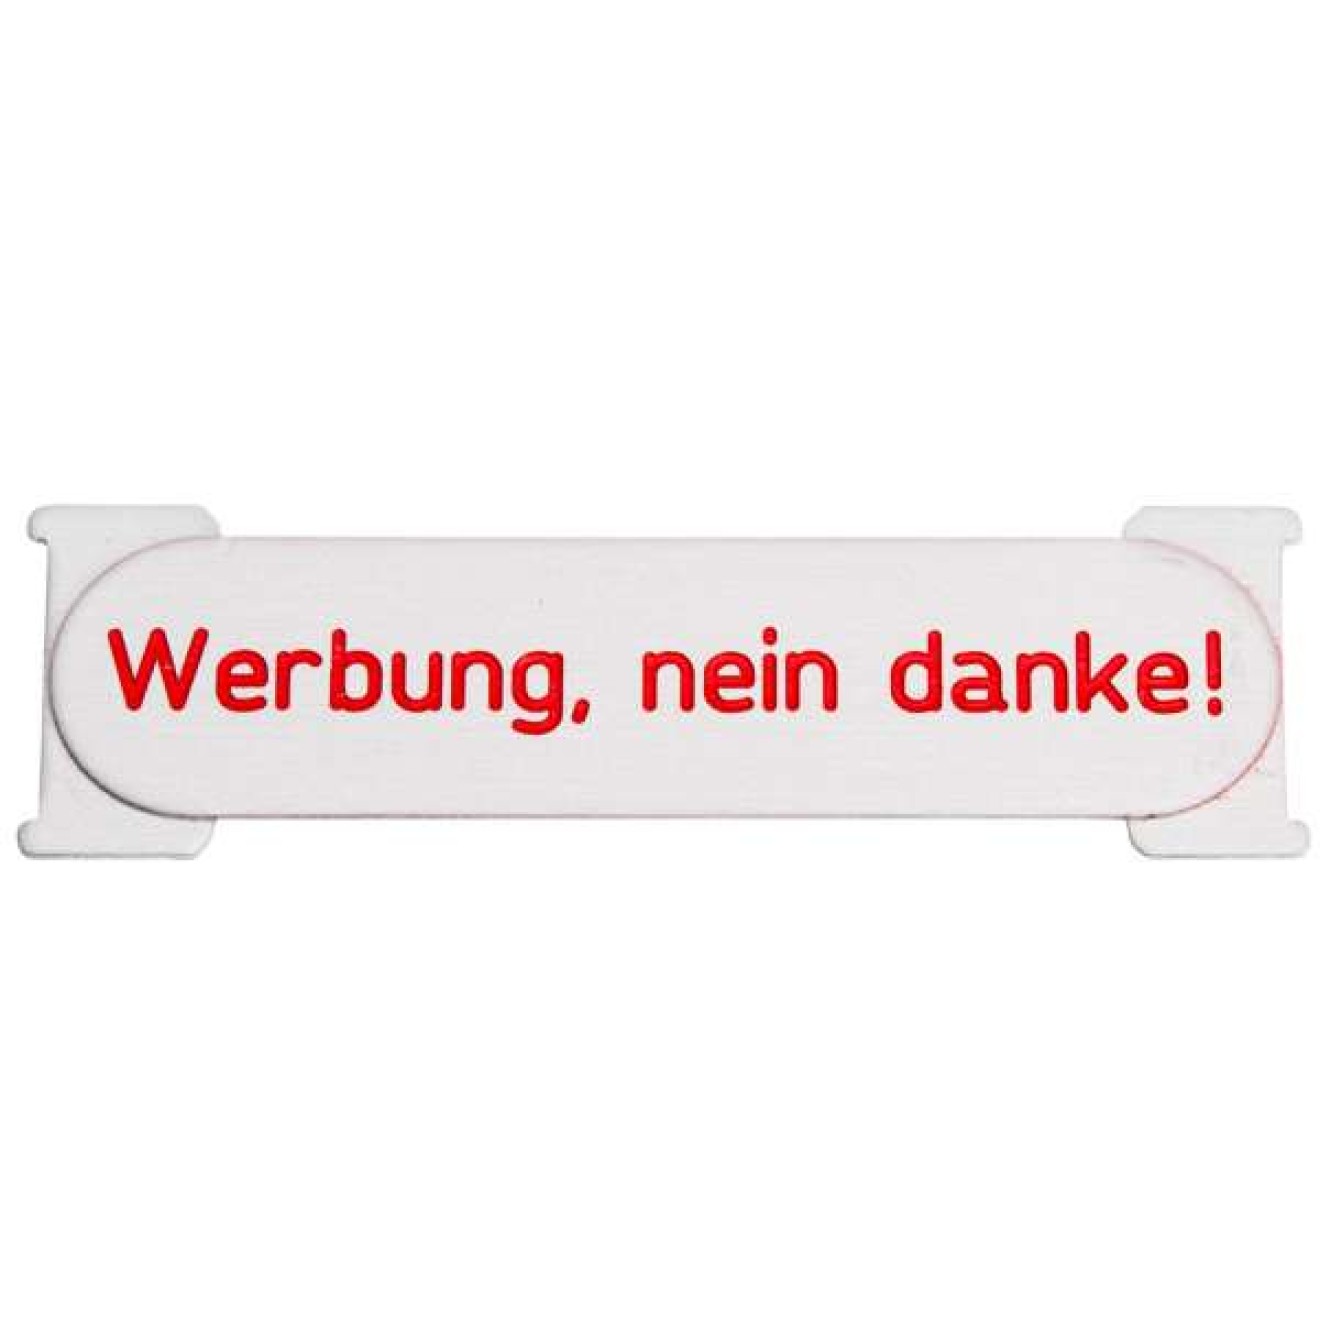 https://www.briefkasten-store.de/images/thumbnail/produkte/large/RENZ_RSA1_ALU_Namensschild_Werbung_nein_danke_-_97-9-90384.jpg